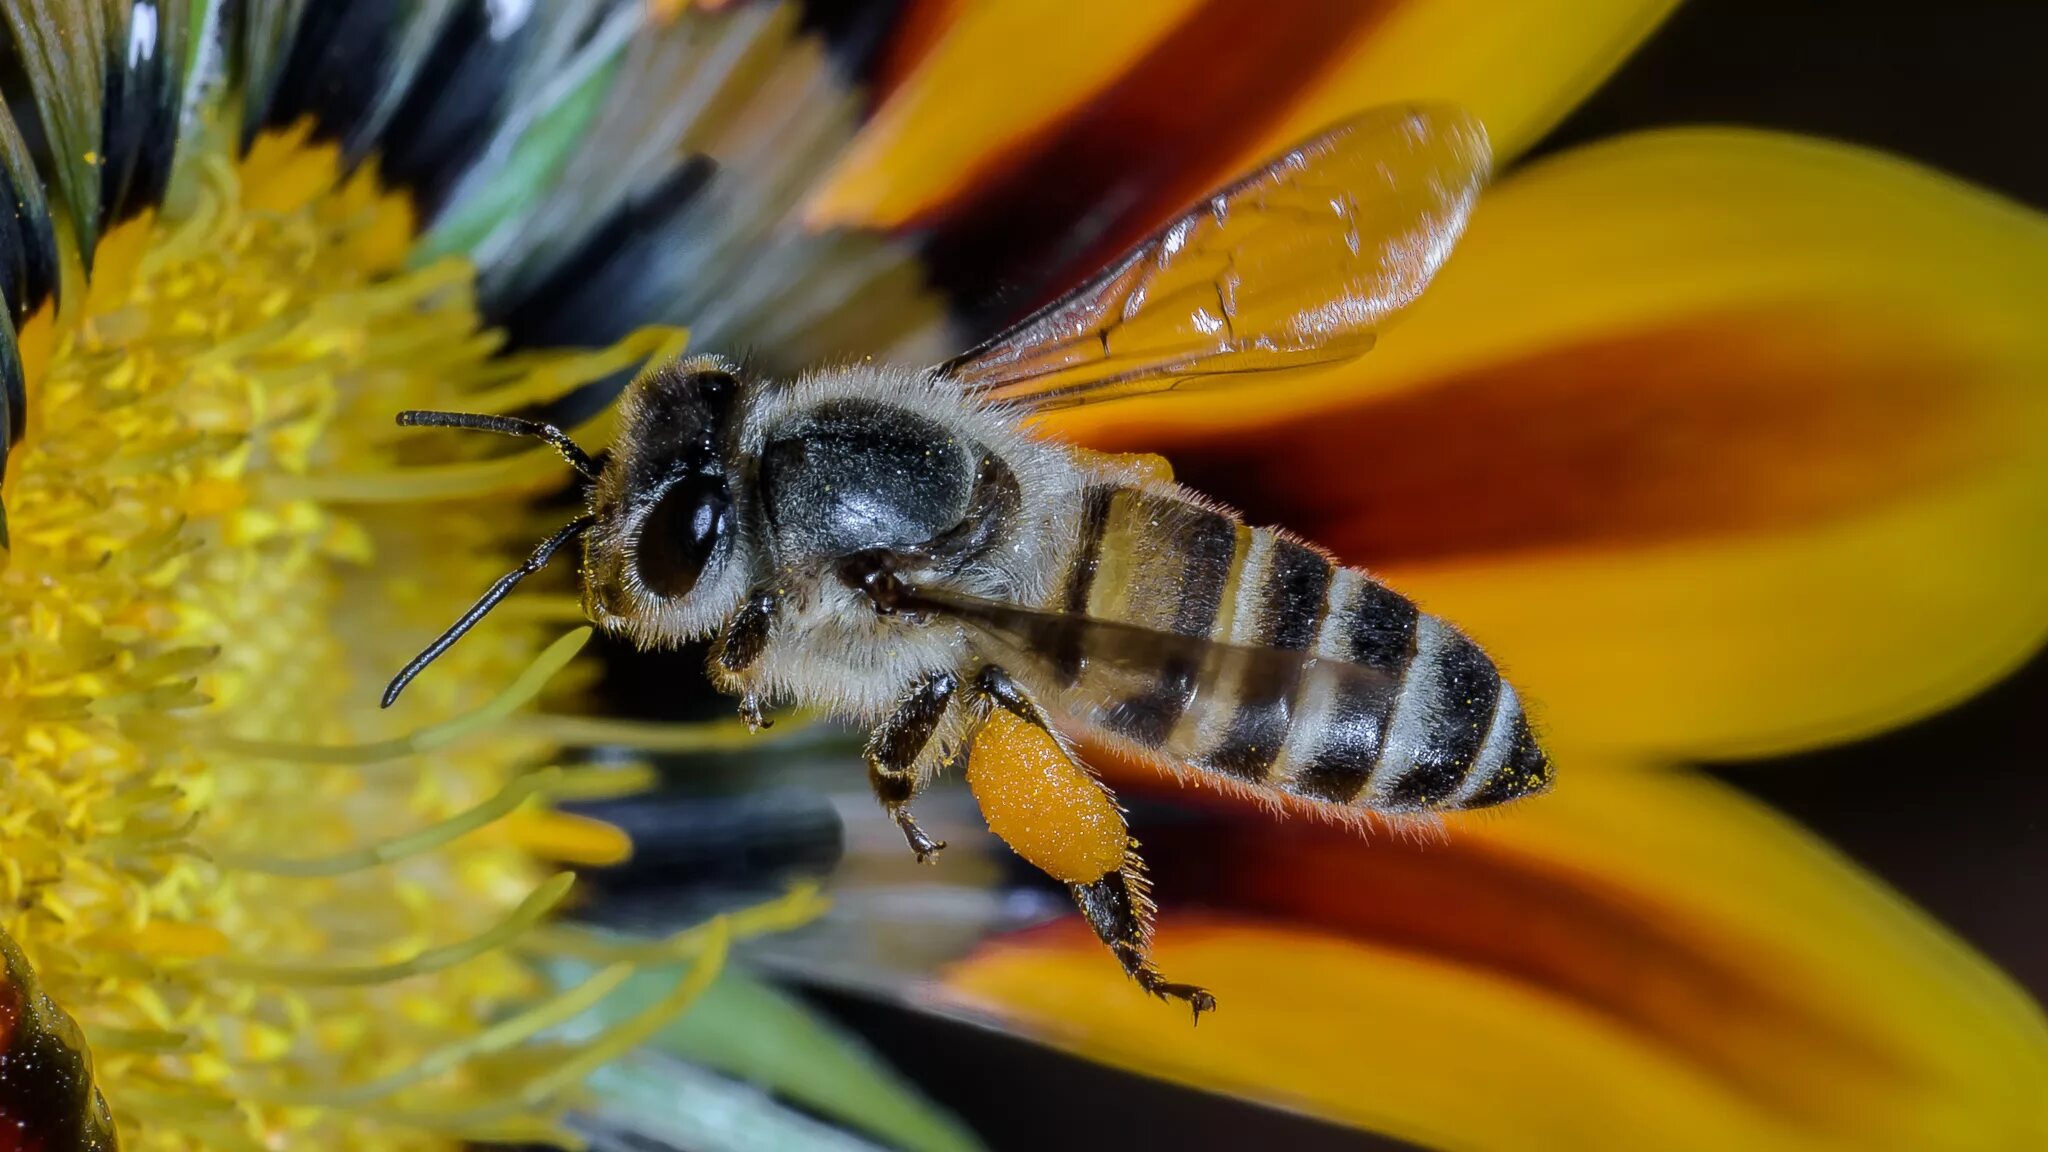 Осмия пчела. Шмель пчела Оса Шершень. Полосатая пчела. Пчела на цветке. Пчела питается пыльцой